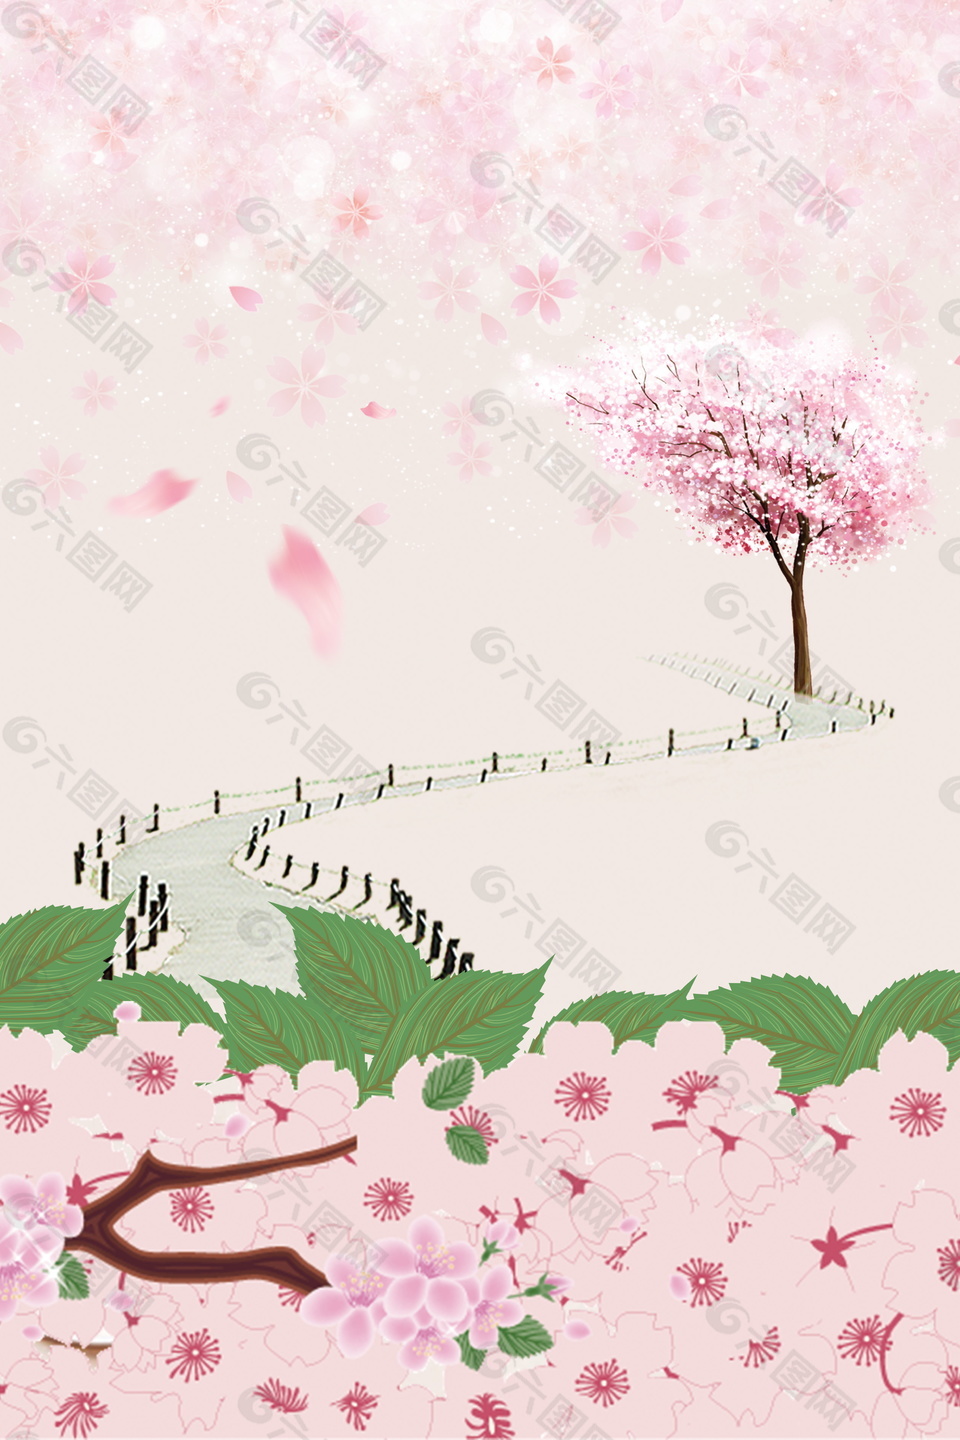 彩色手绘风景木制小路粉色樱花风景背景